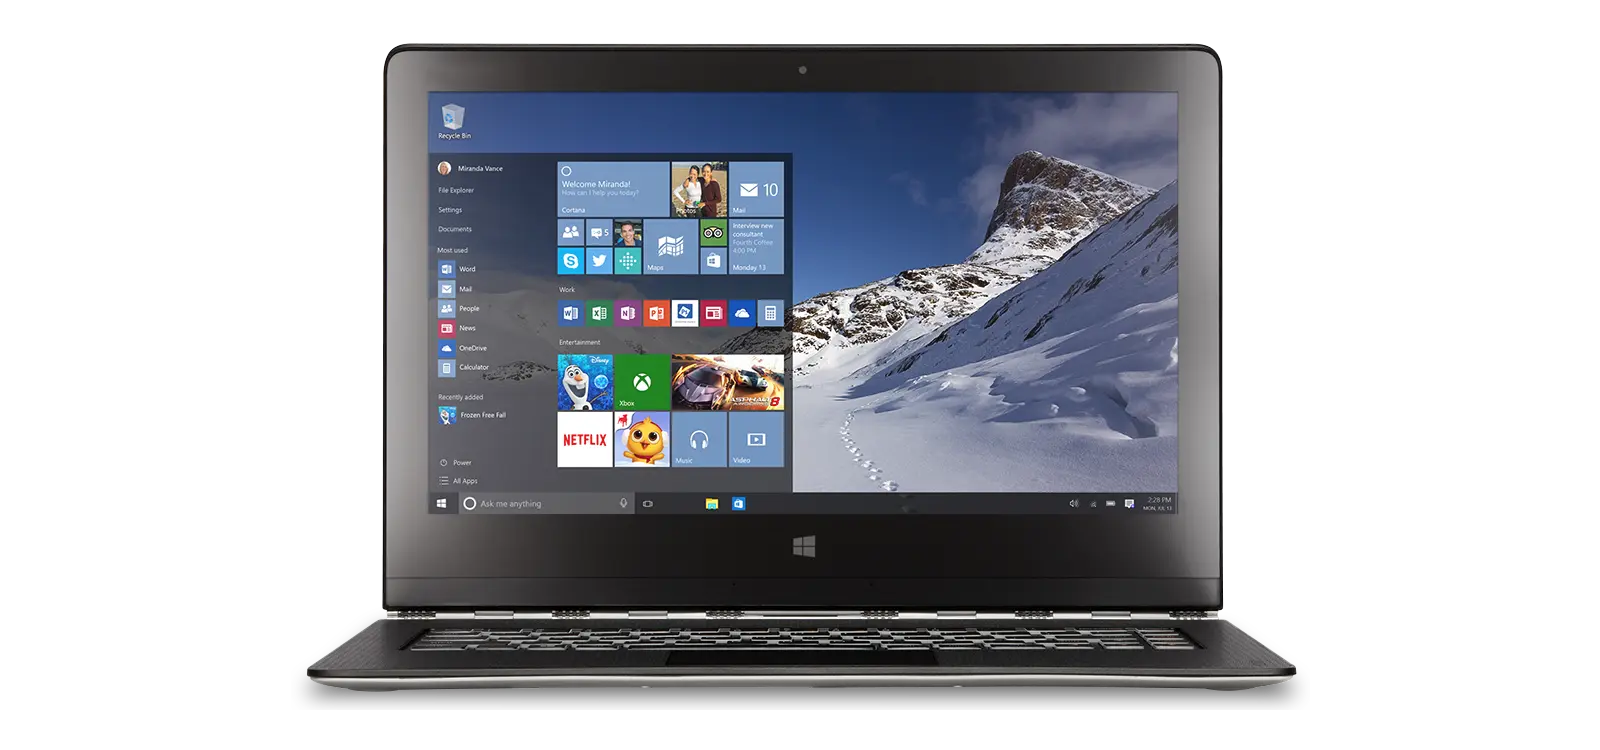 Windows 10 podrá activarse con claves de Windows 7 y Windows 8